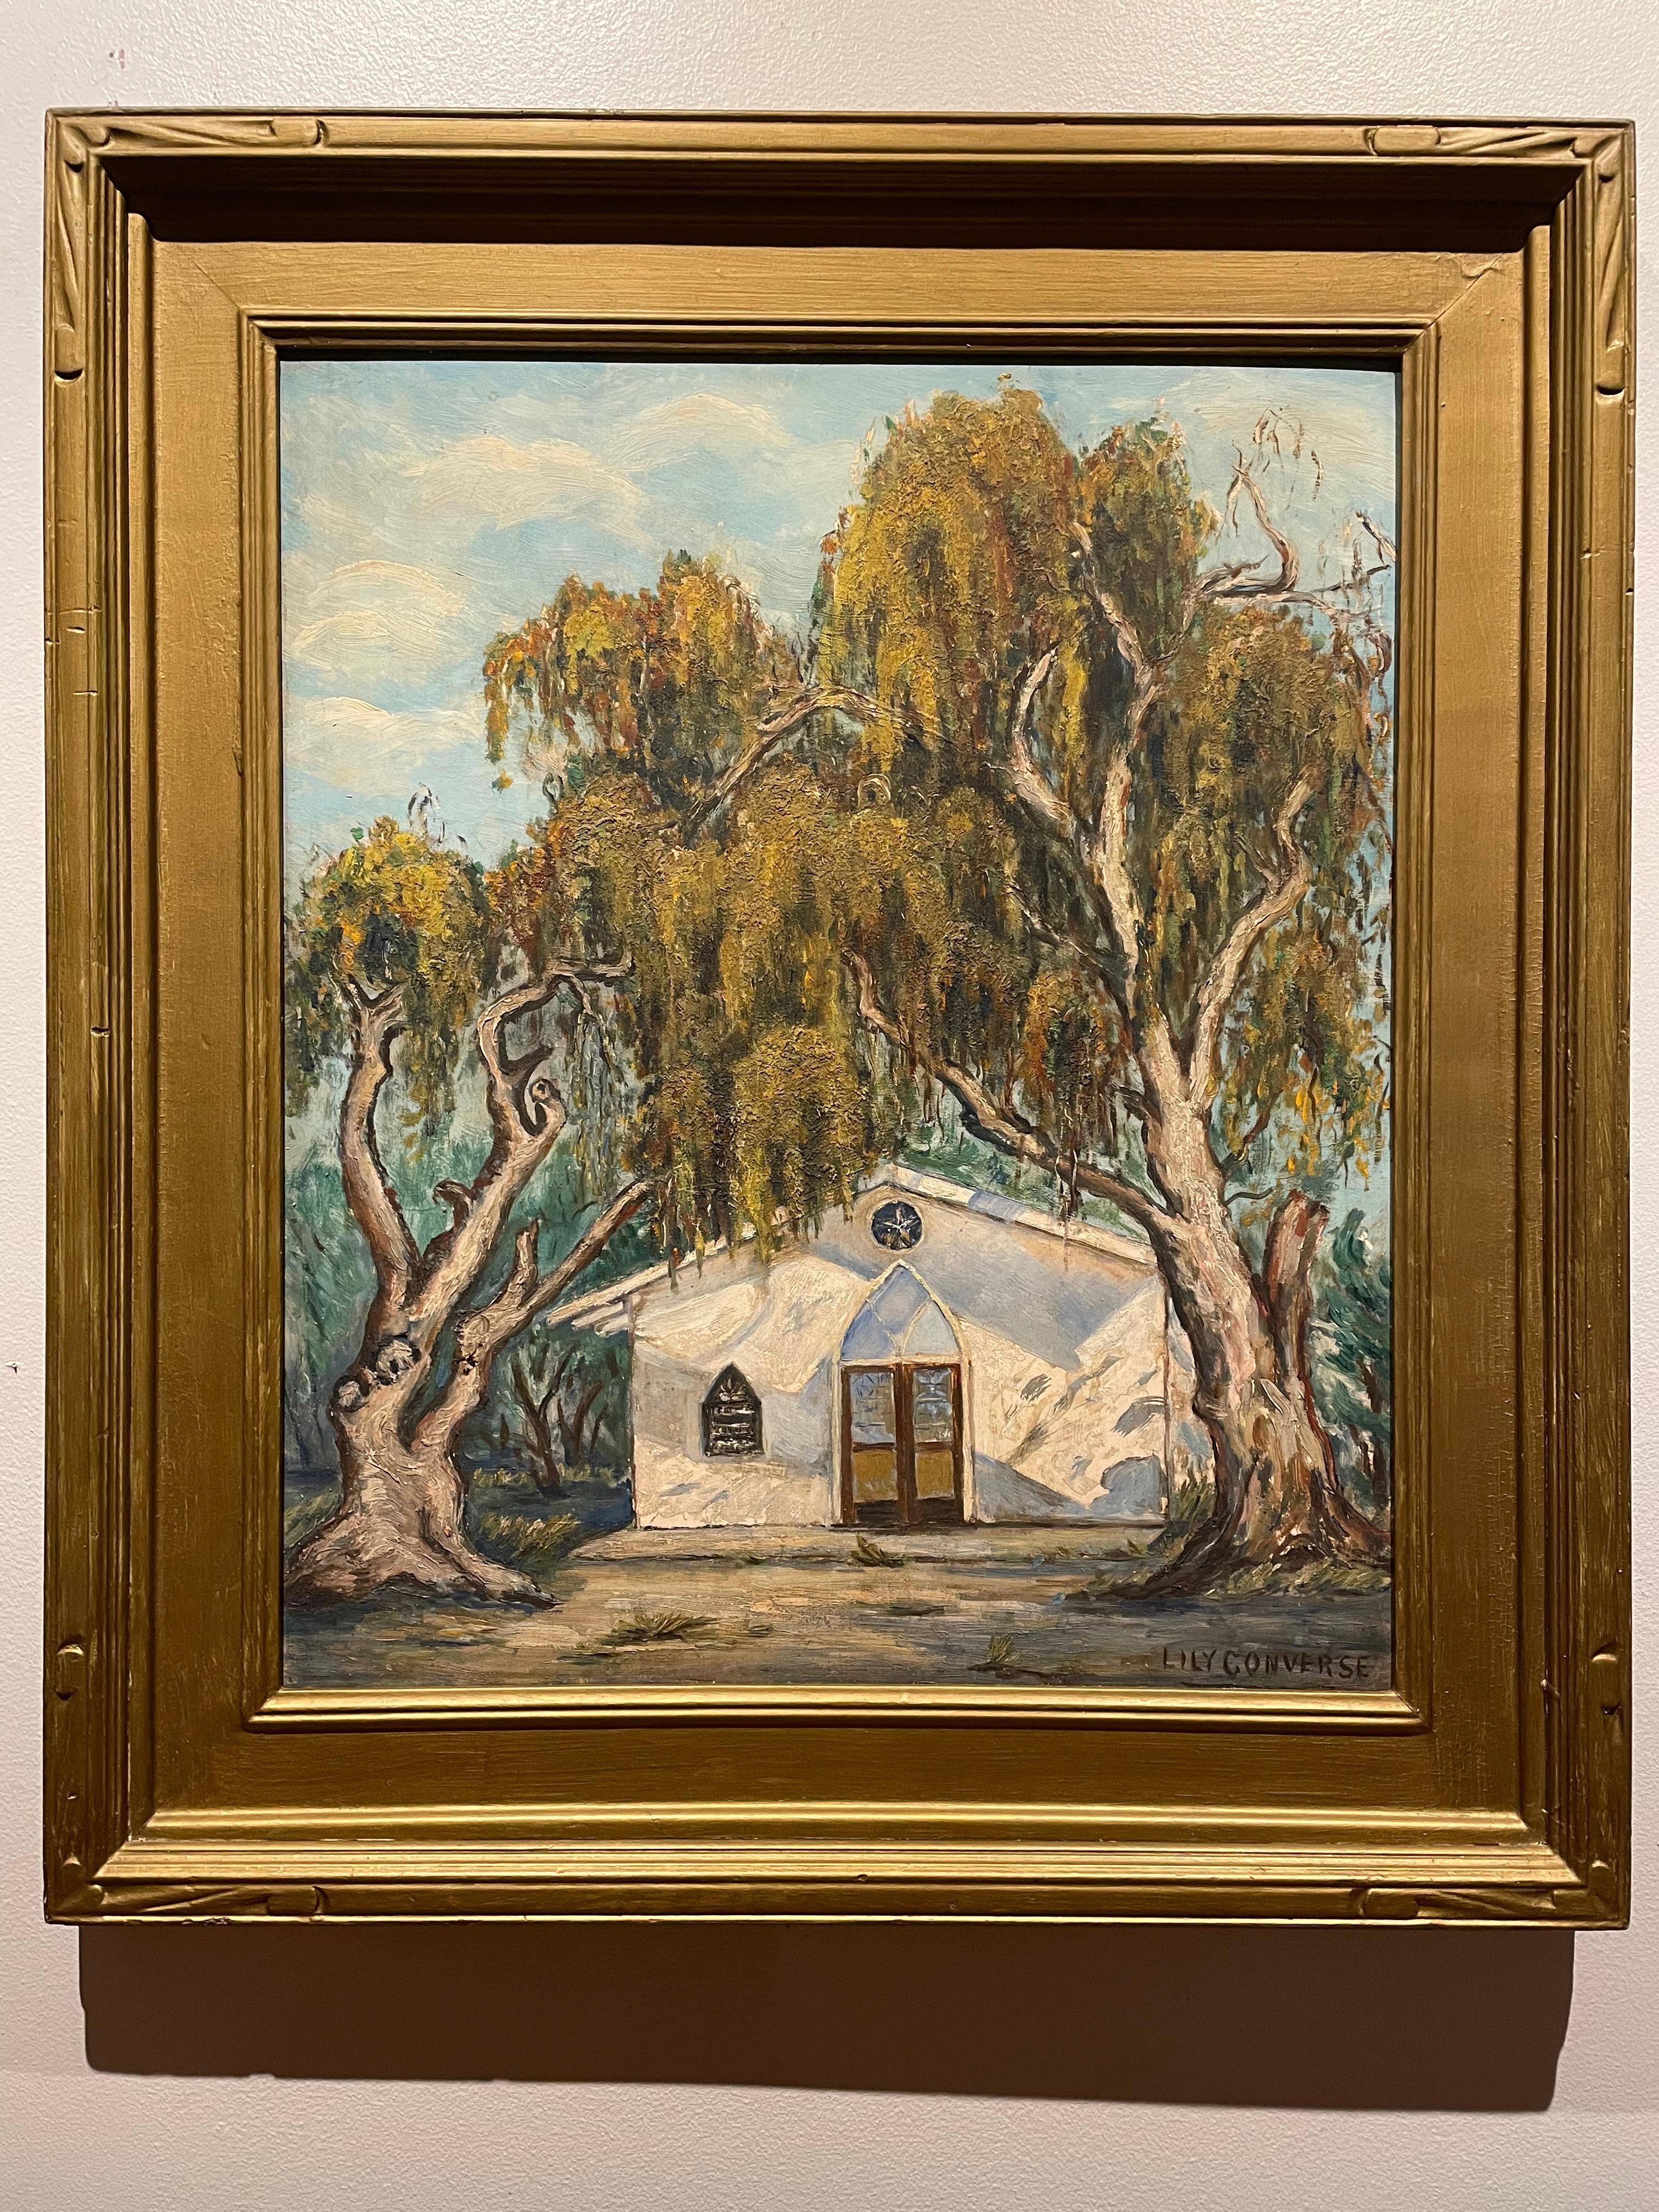 Impressionistisches Gemälde im Südwesten (Kalifornien?), Lily S., um 1940